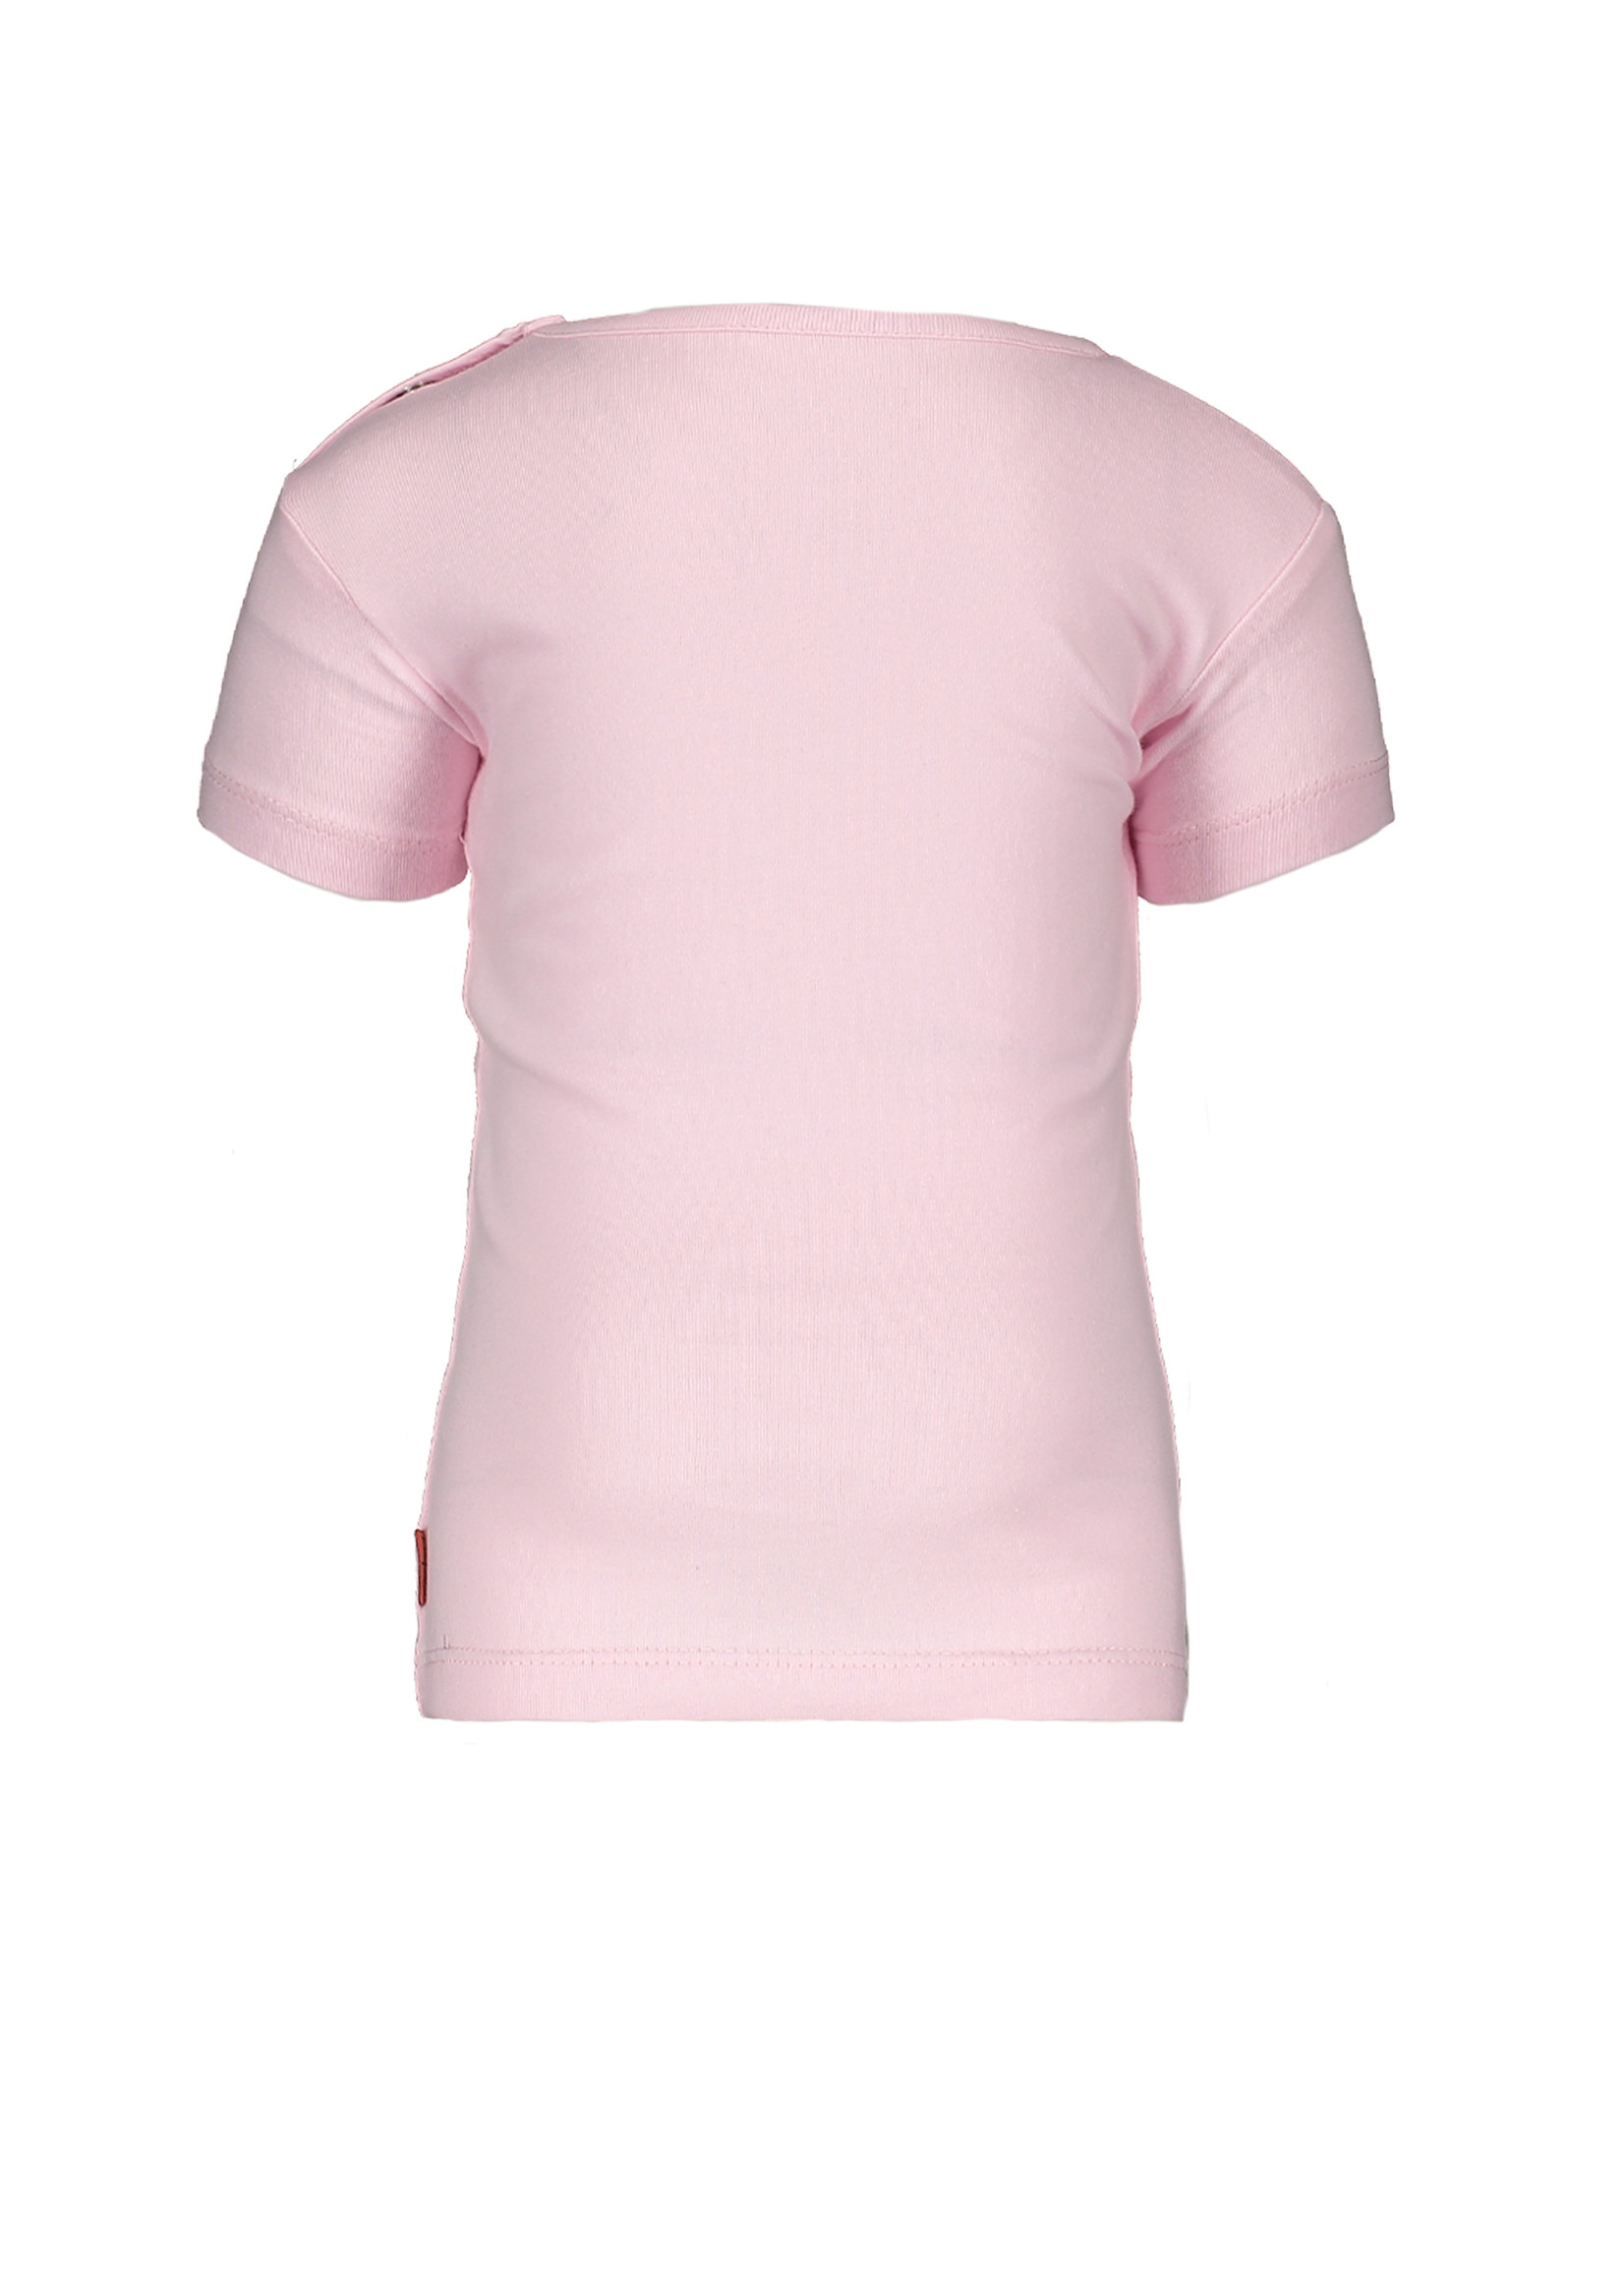 Little Bampidano Girls short sleeve T-shirt Dionne plain with print FLOWER